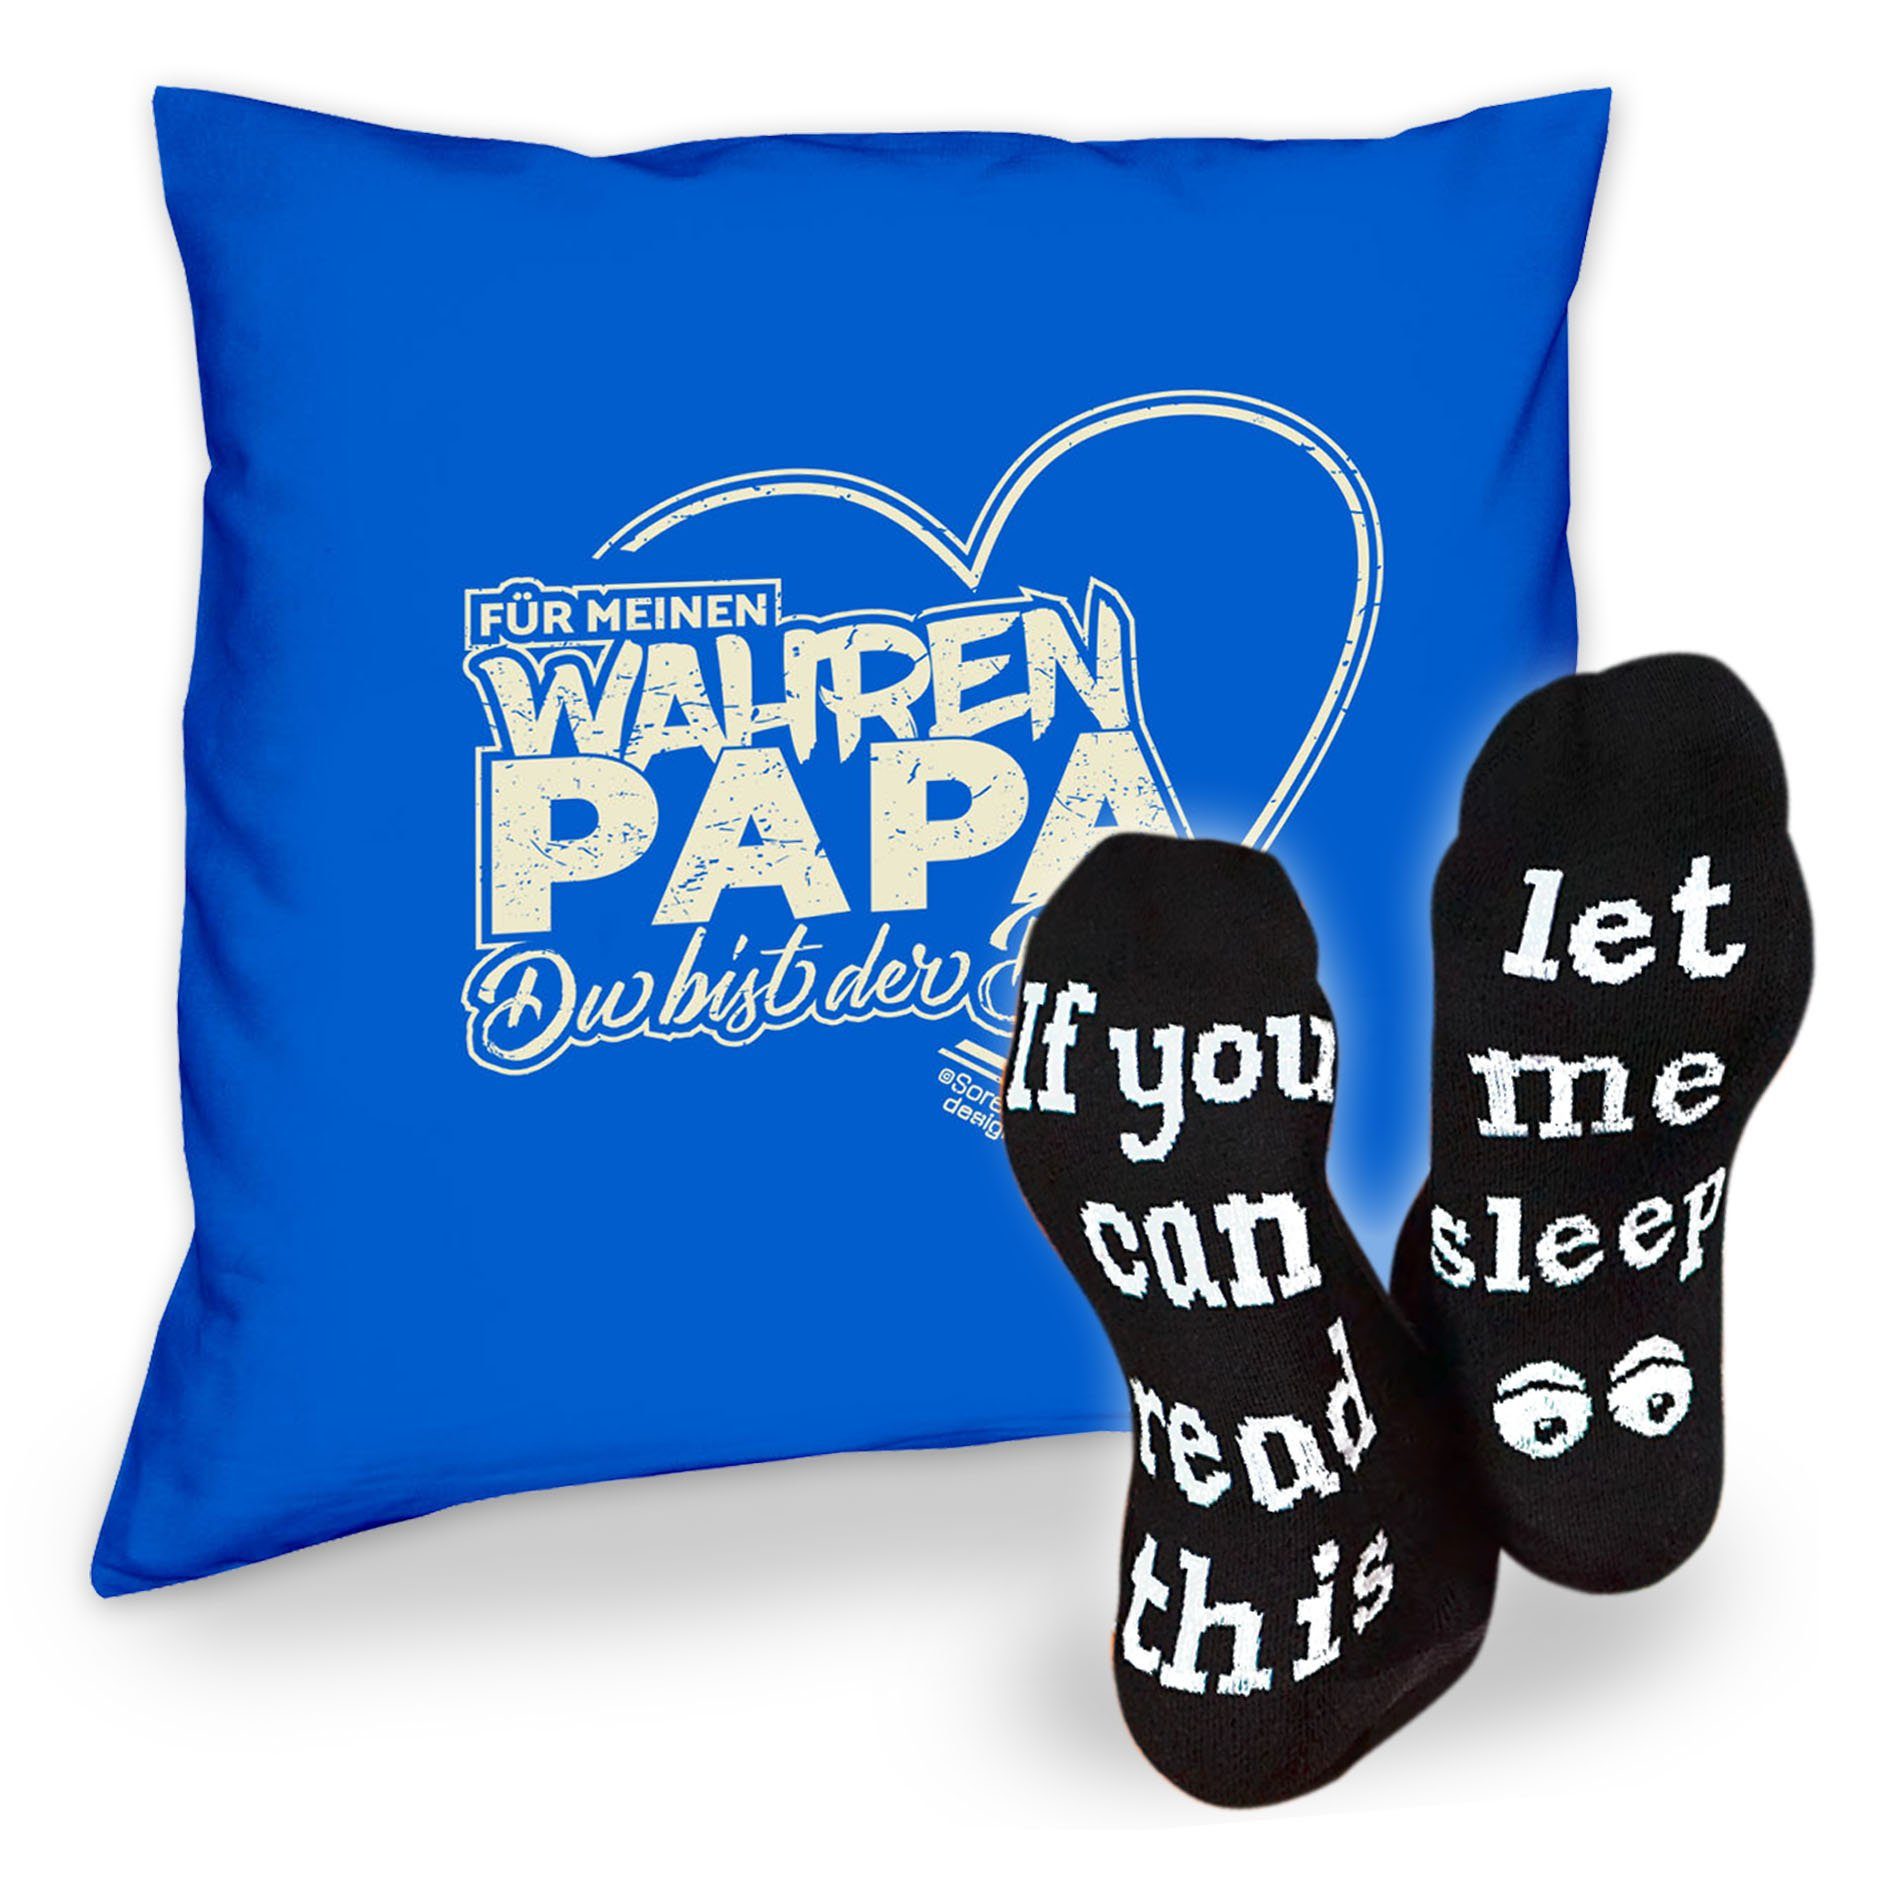 Soreso® Dekokissen royal-blau meinen wahren Sleep, Männer Vatertagsgeschenk Kissen Für Sprüche Papa Socken & Papa